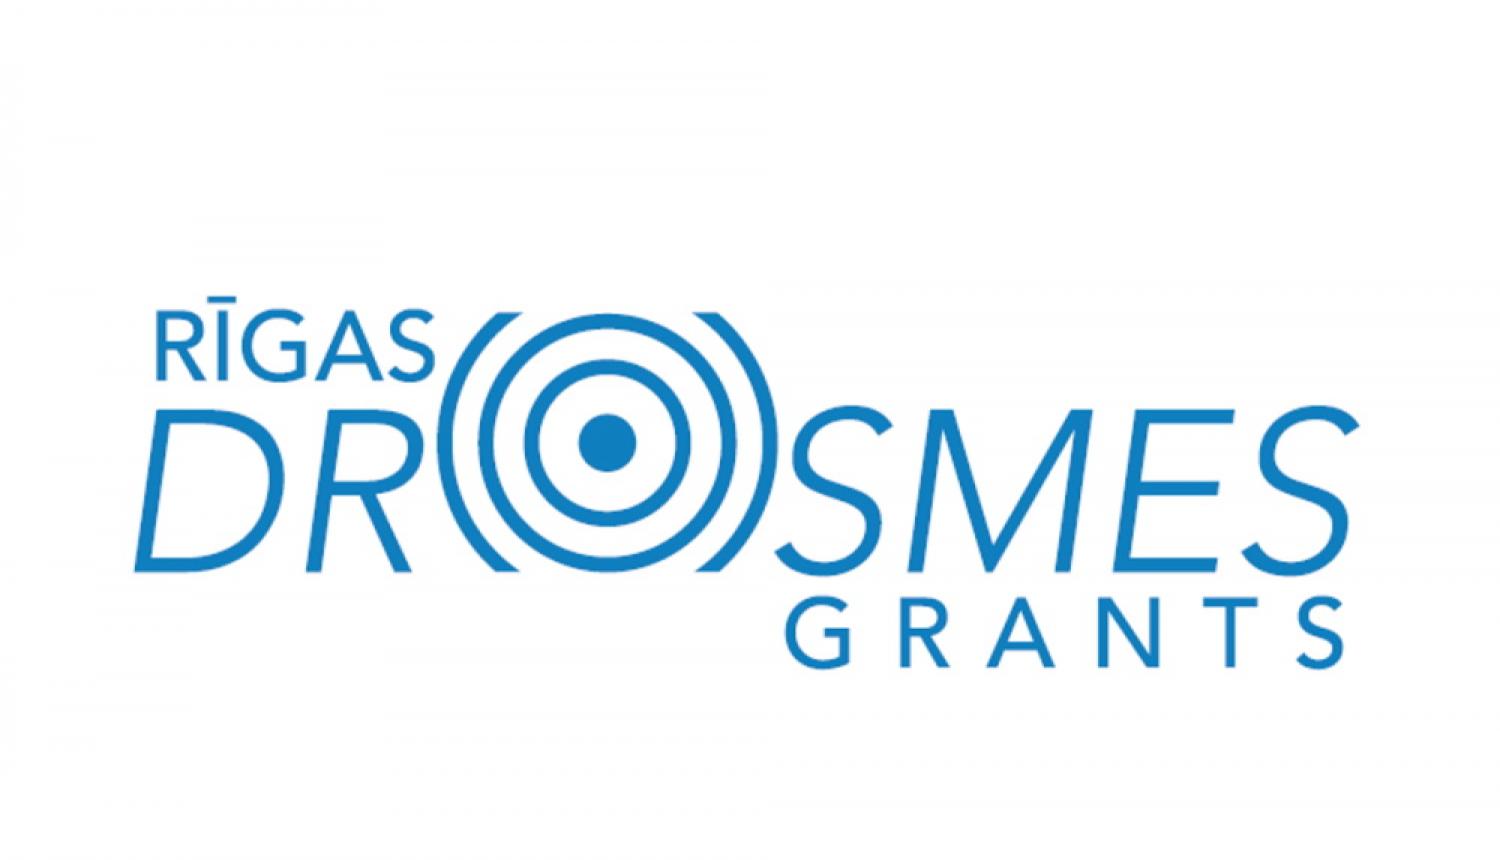 Rīgas drosmes grants logo